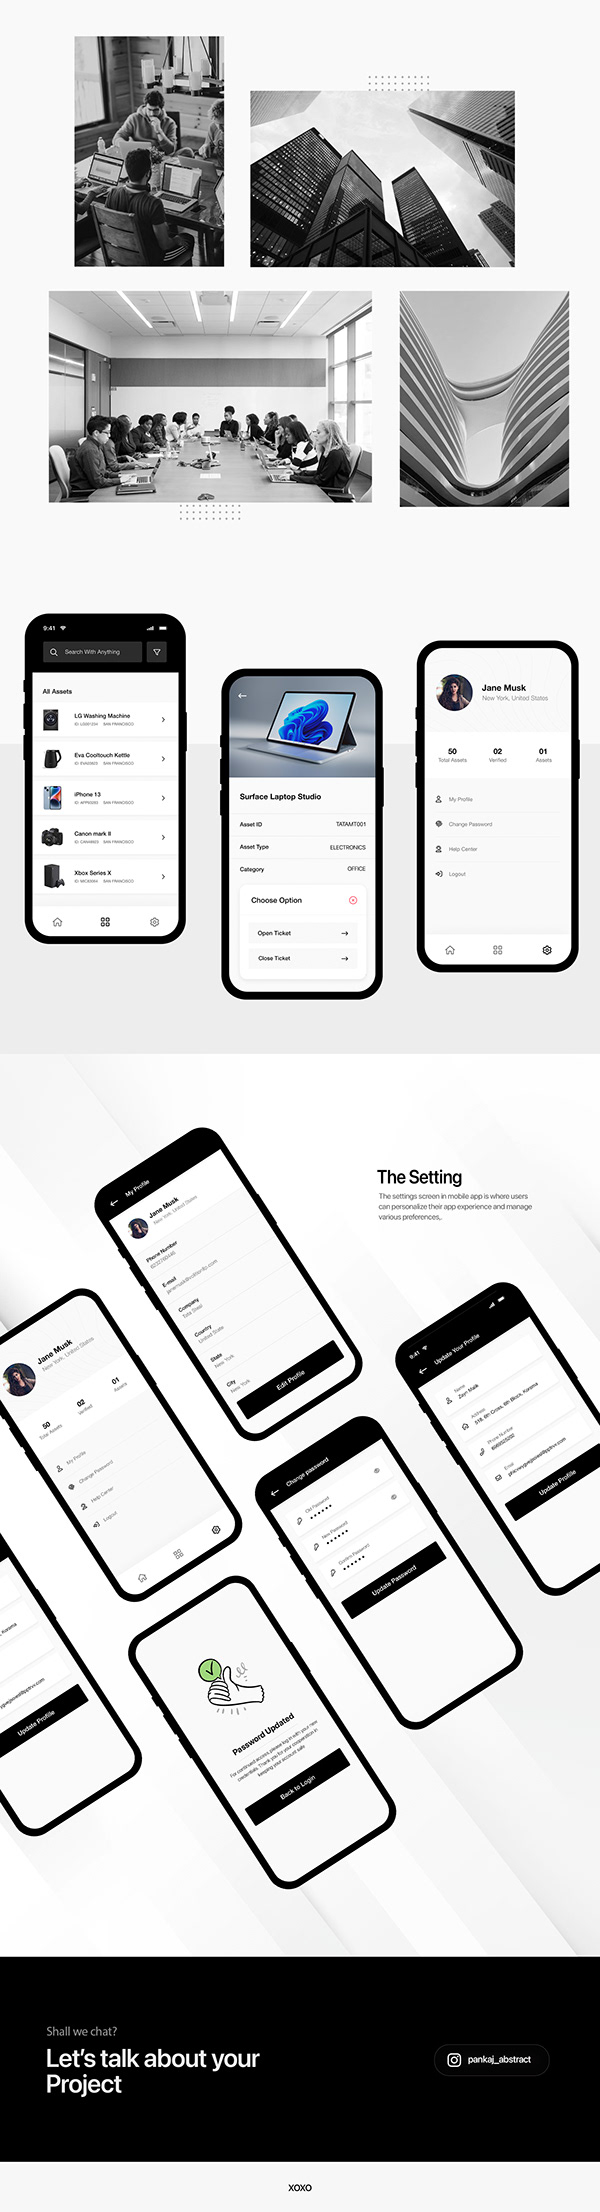 Alphalize | Mobile App | UIUX